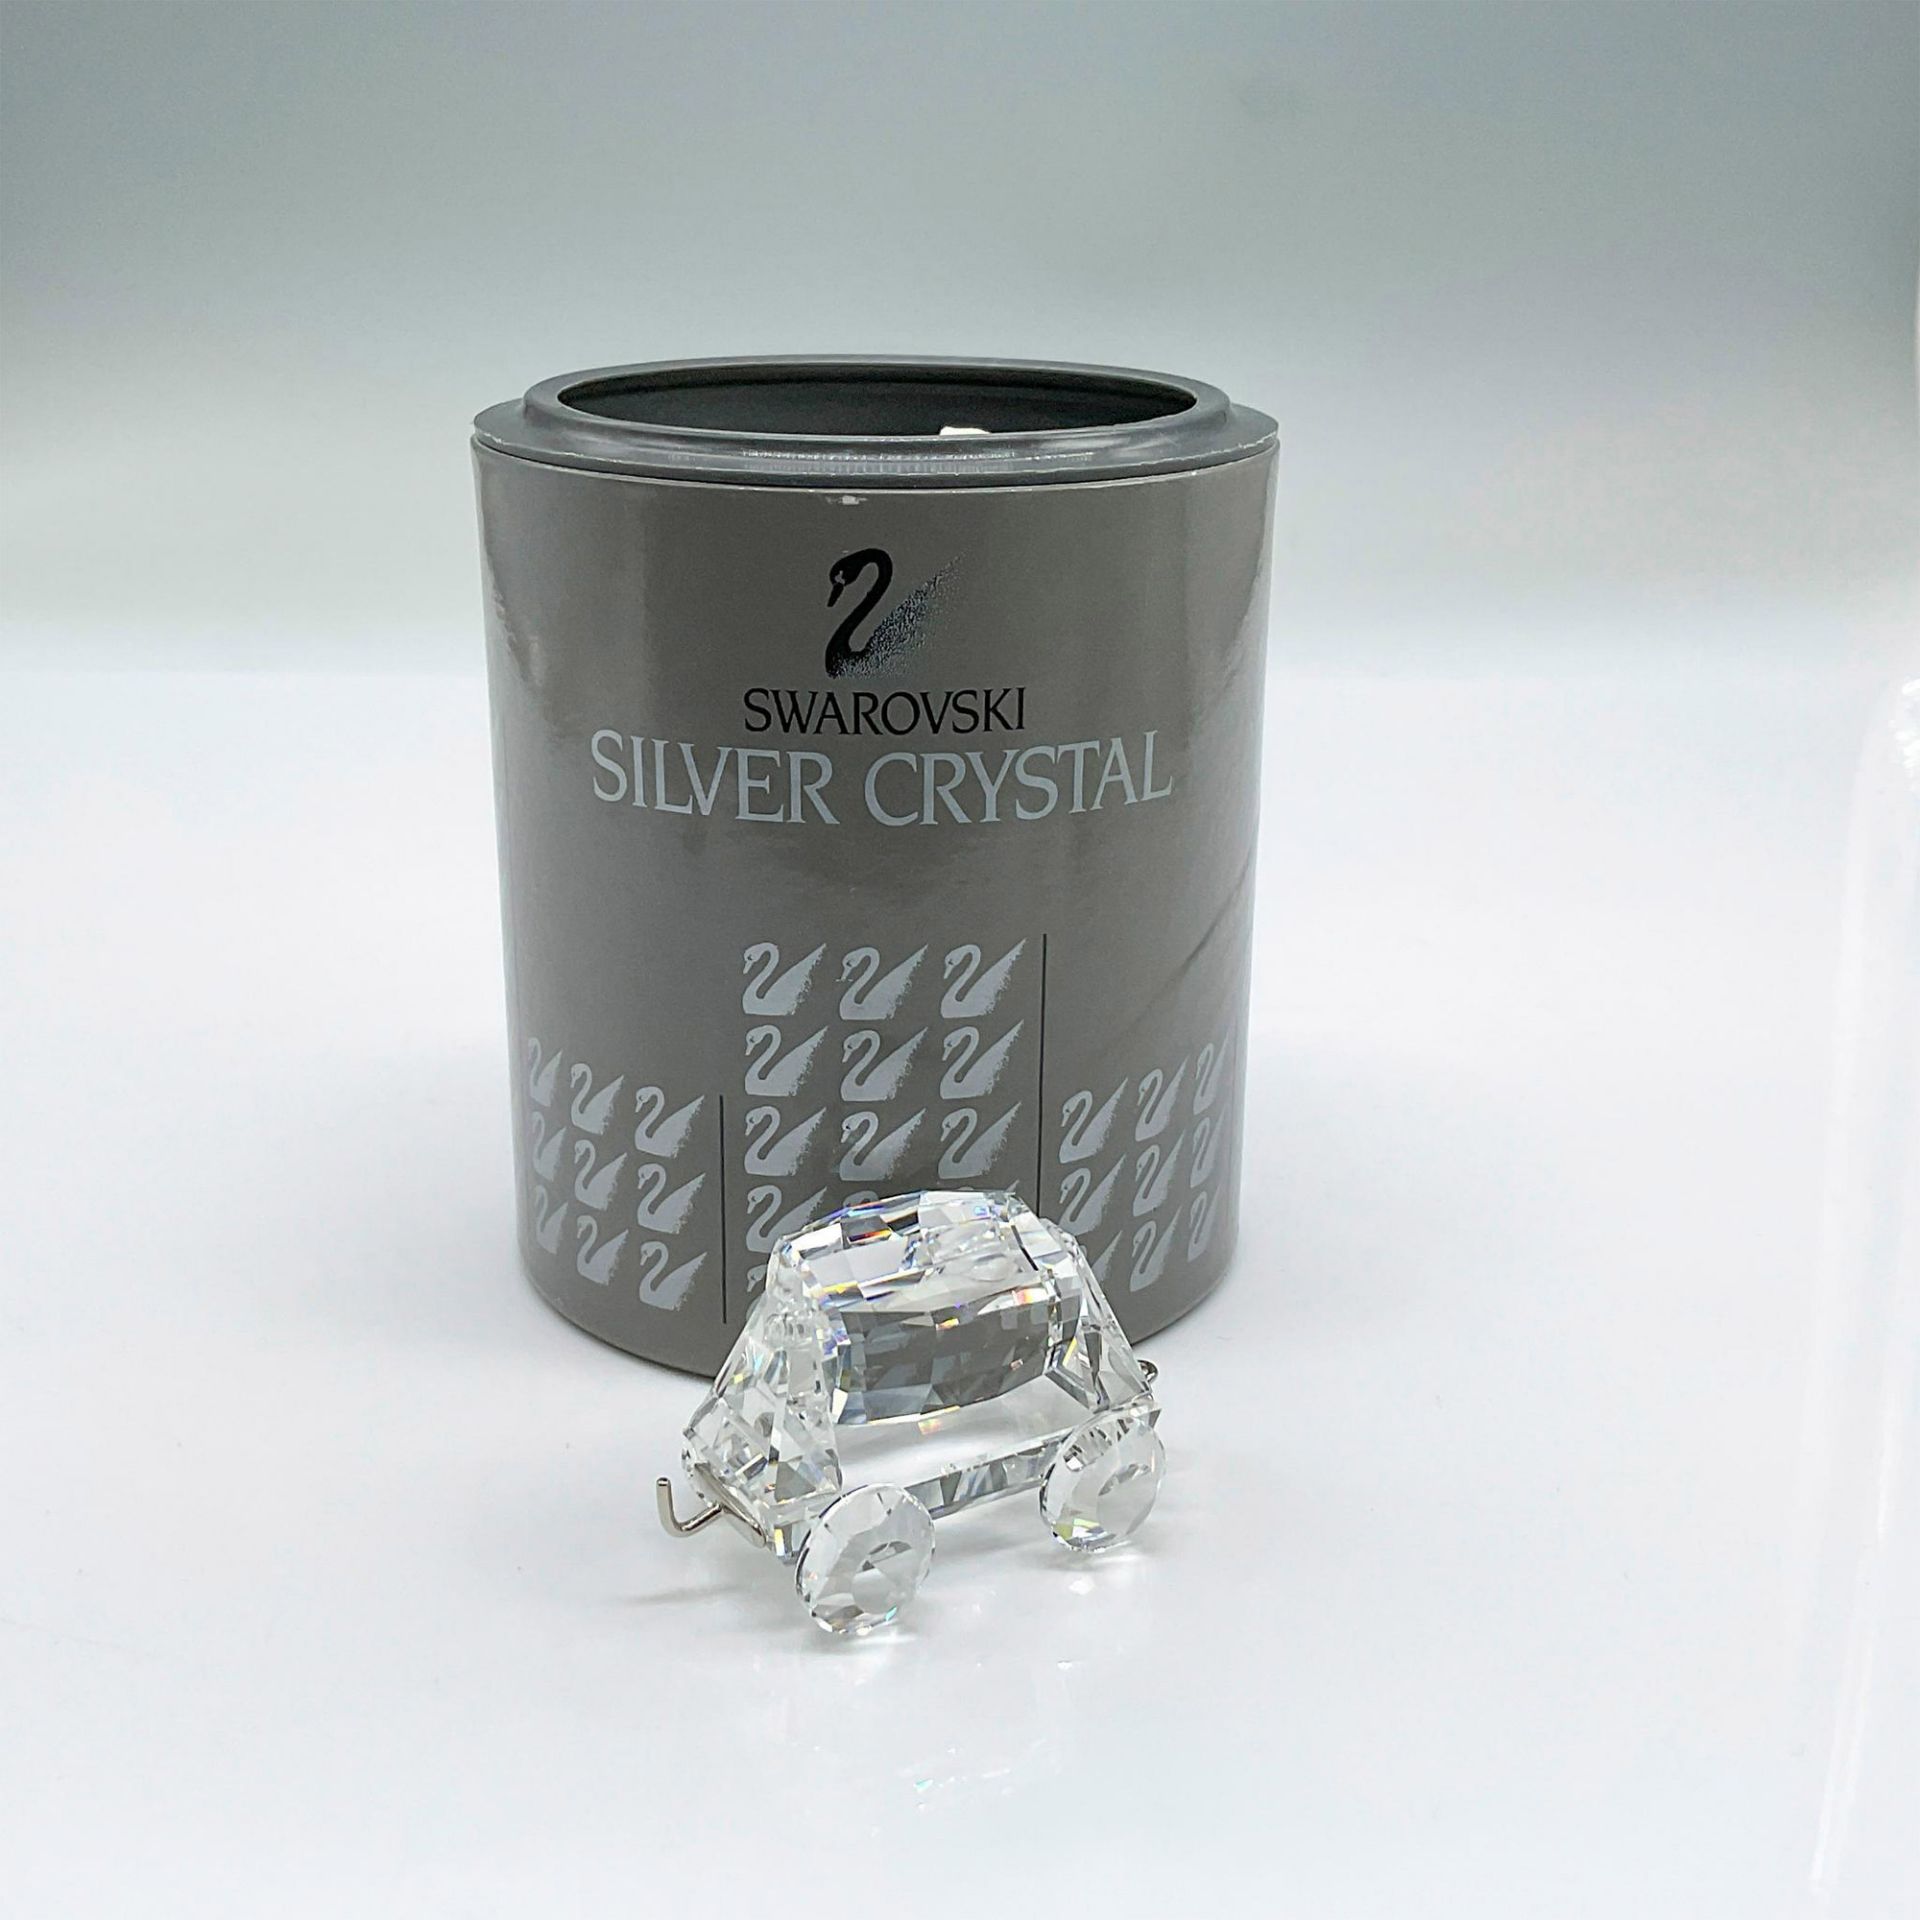 Swarovski Silver Crystal Figurine, Tipping Wagon Train Car - Bild 4 aus 4